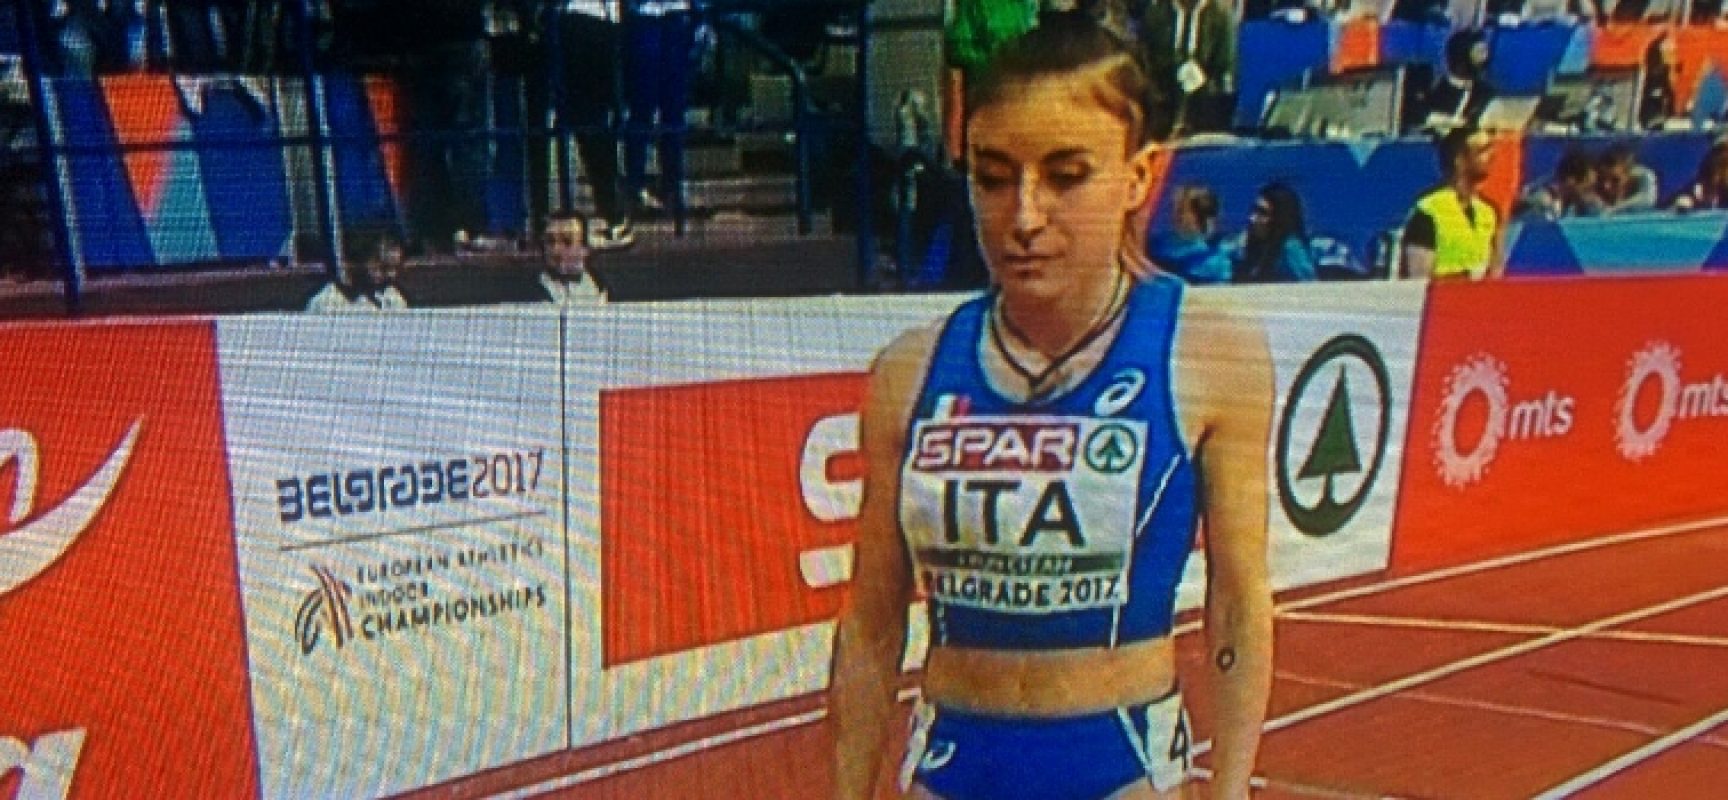 Europei atletica, Lucia Pasquale quarta con la staffetta azzurra